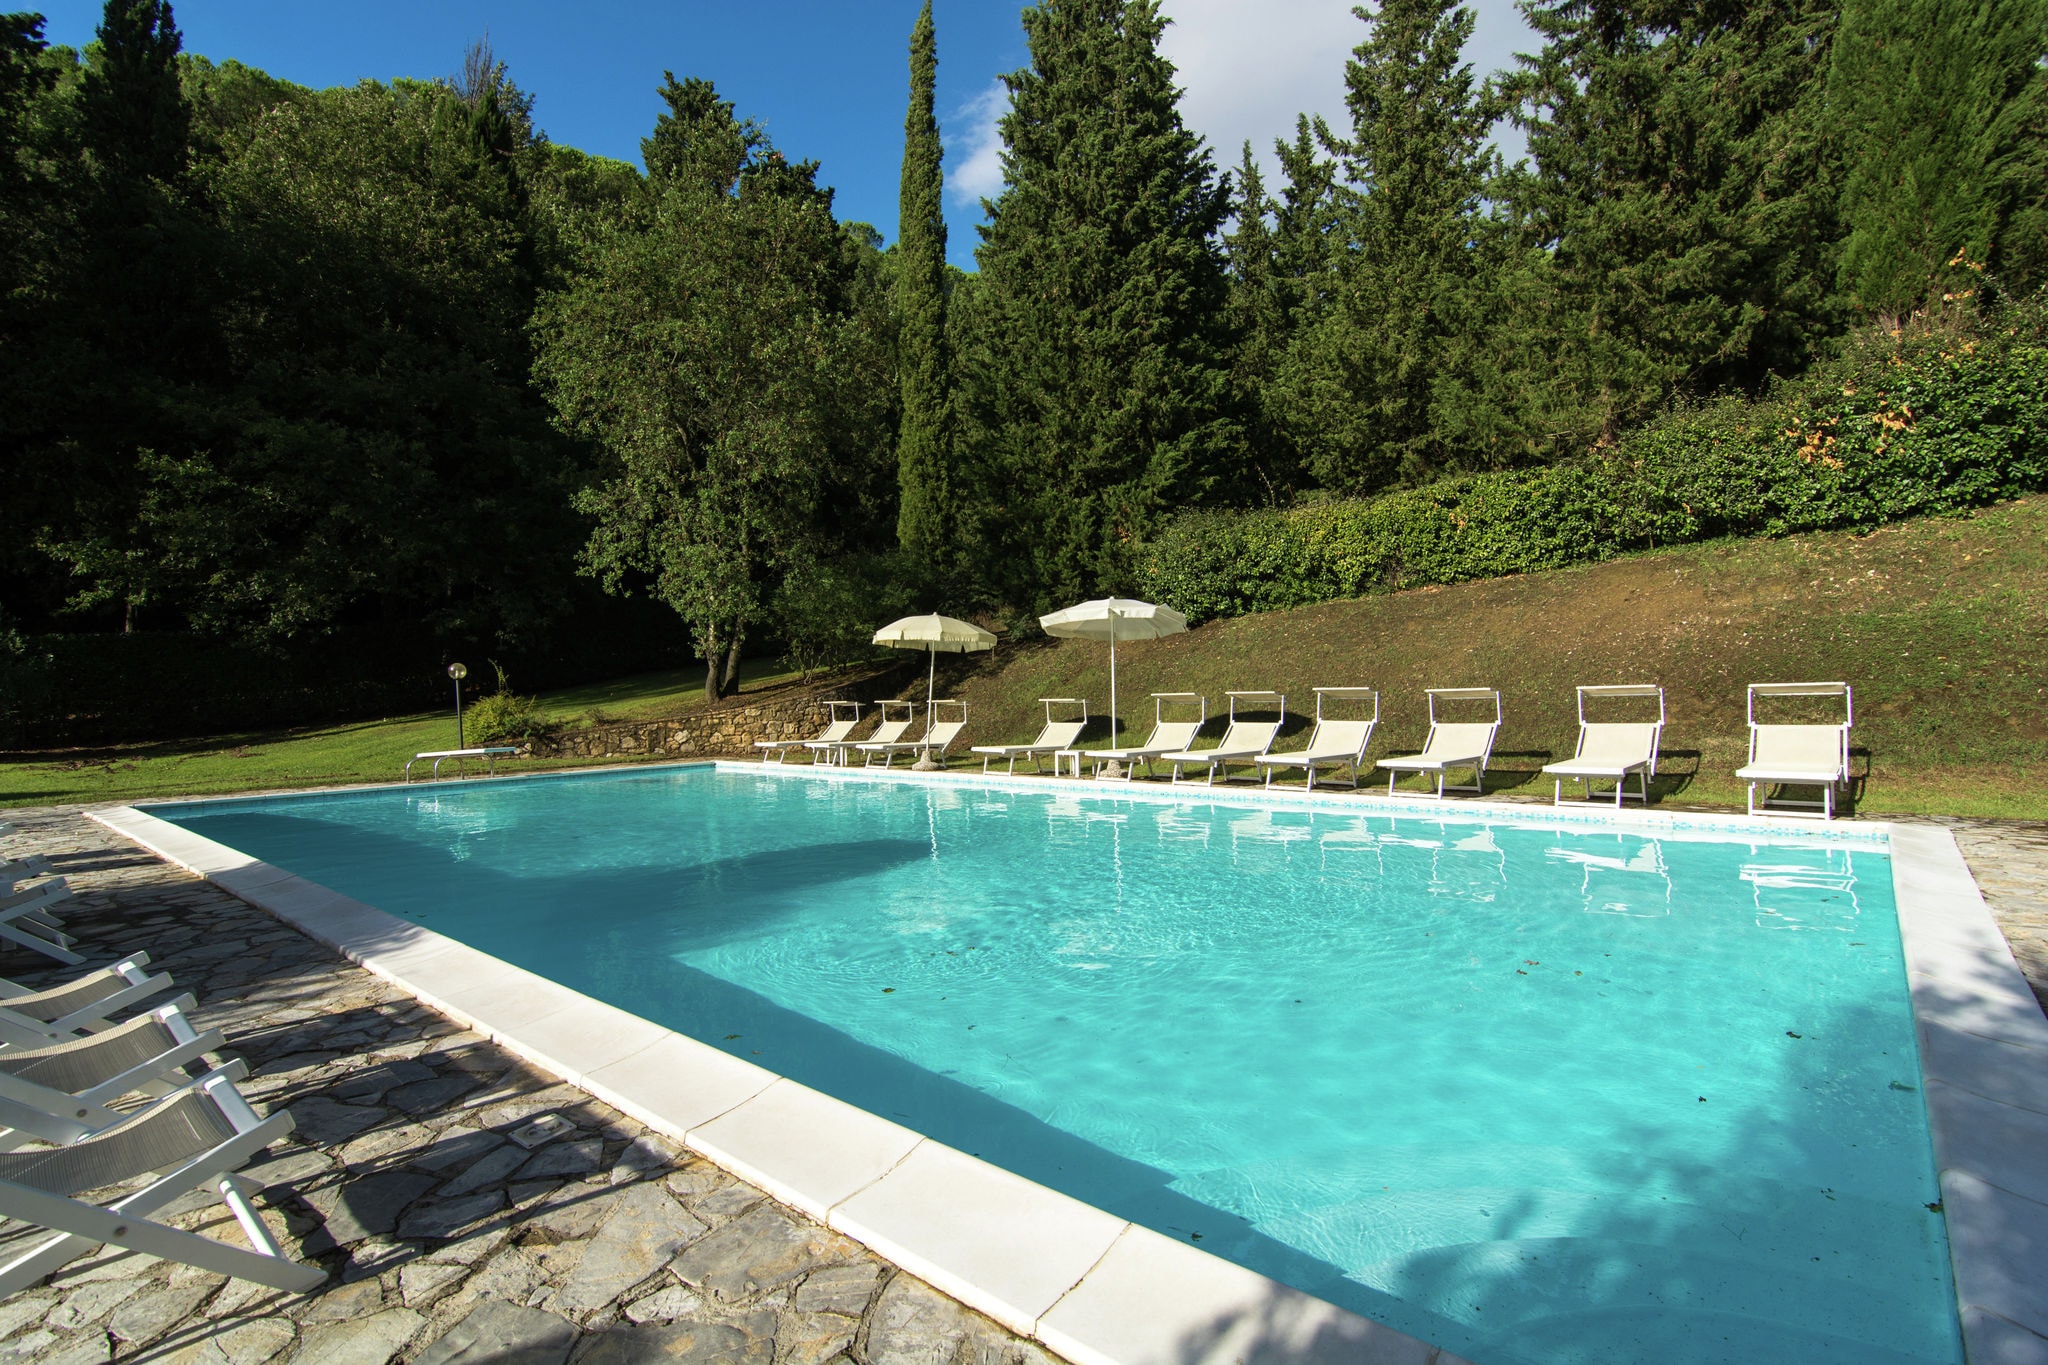 Mooie, Toscaanse boerderij met groot zwembad